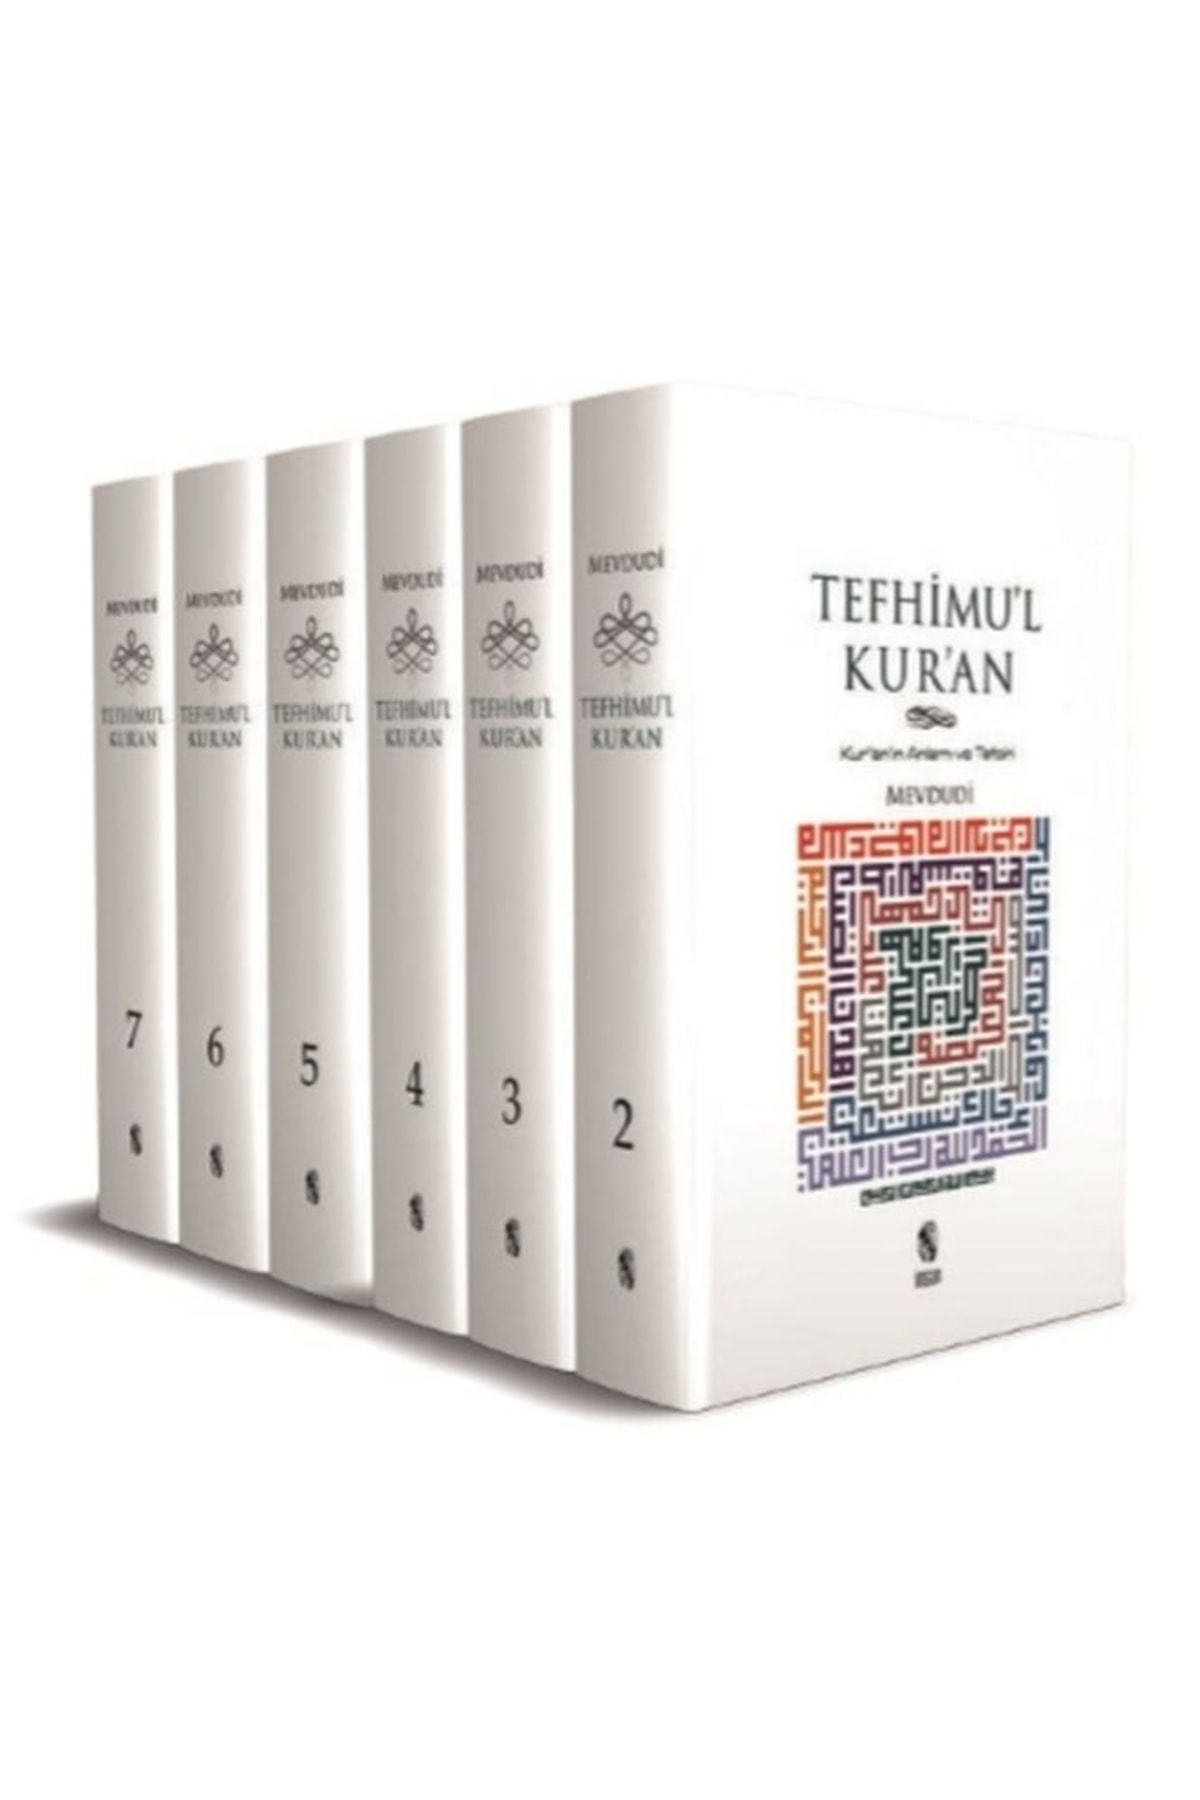 İnsan Yayınları Küçük Boy Tefhimu'l Kur'an Kur'ın'ın Anlamı ve Tefsiri 7 Cilt Takım